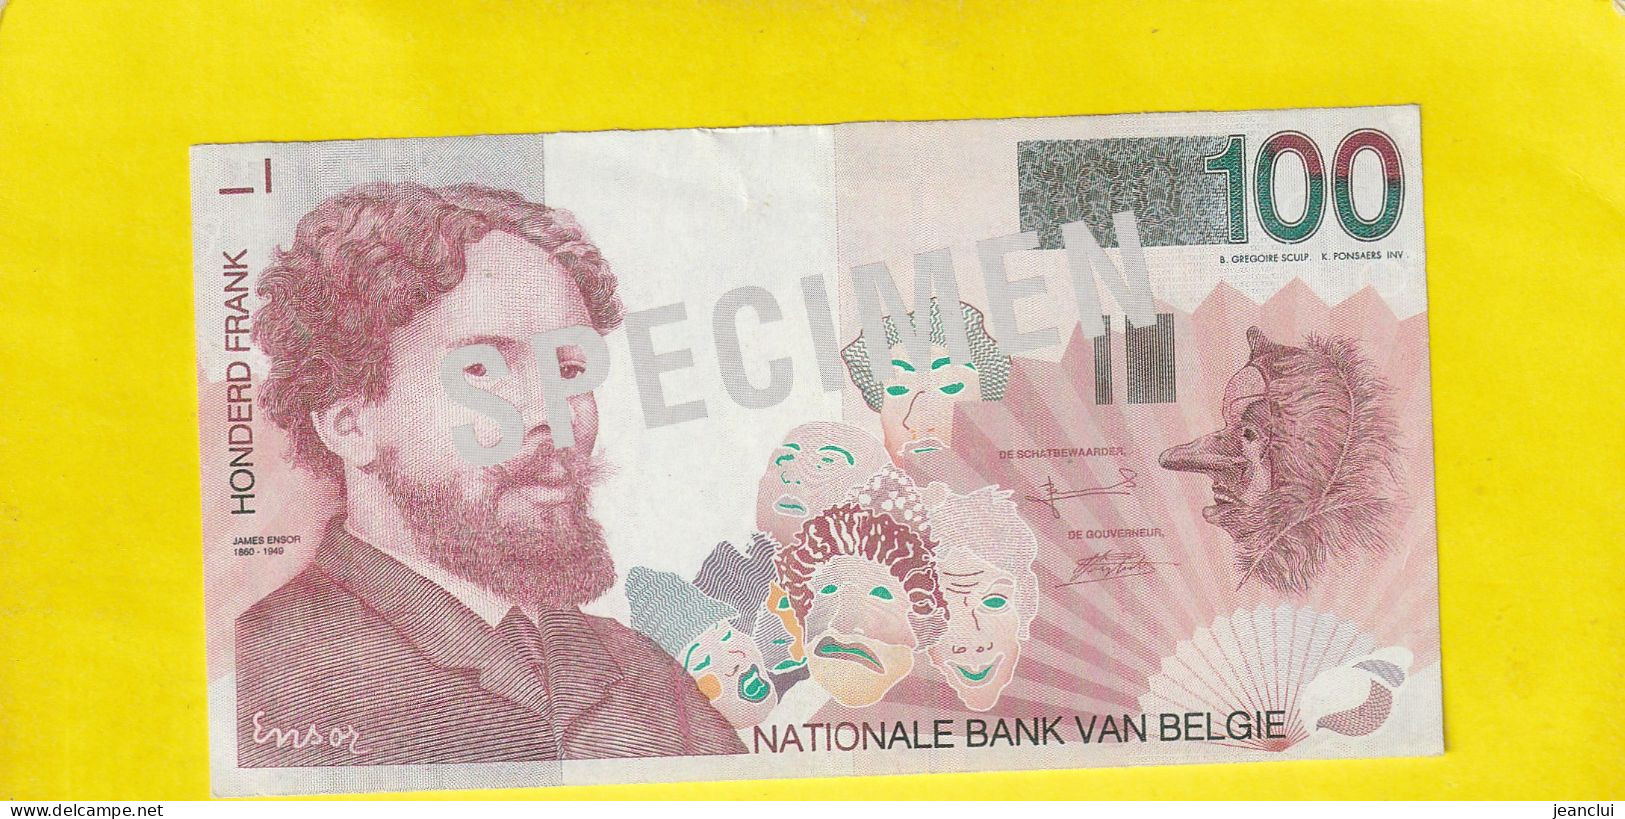 SPECIMEN . NATIONALE BANK VAN BELGIE  .  100 FRANCS  .  JAMES ENSOR 1860-1949 .  2 SCANNES  .  ETAT LUXE . UNC - [ 8] Ficticios & Especimenes